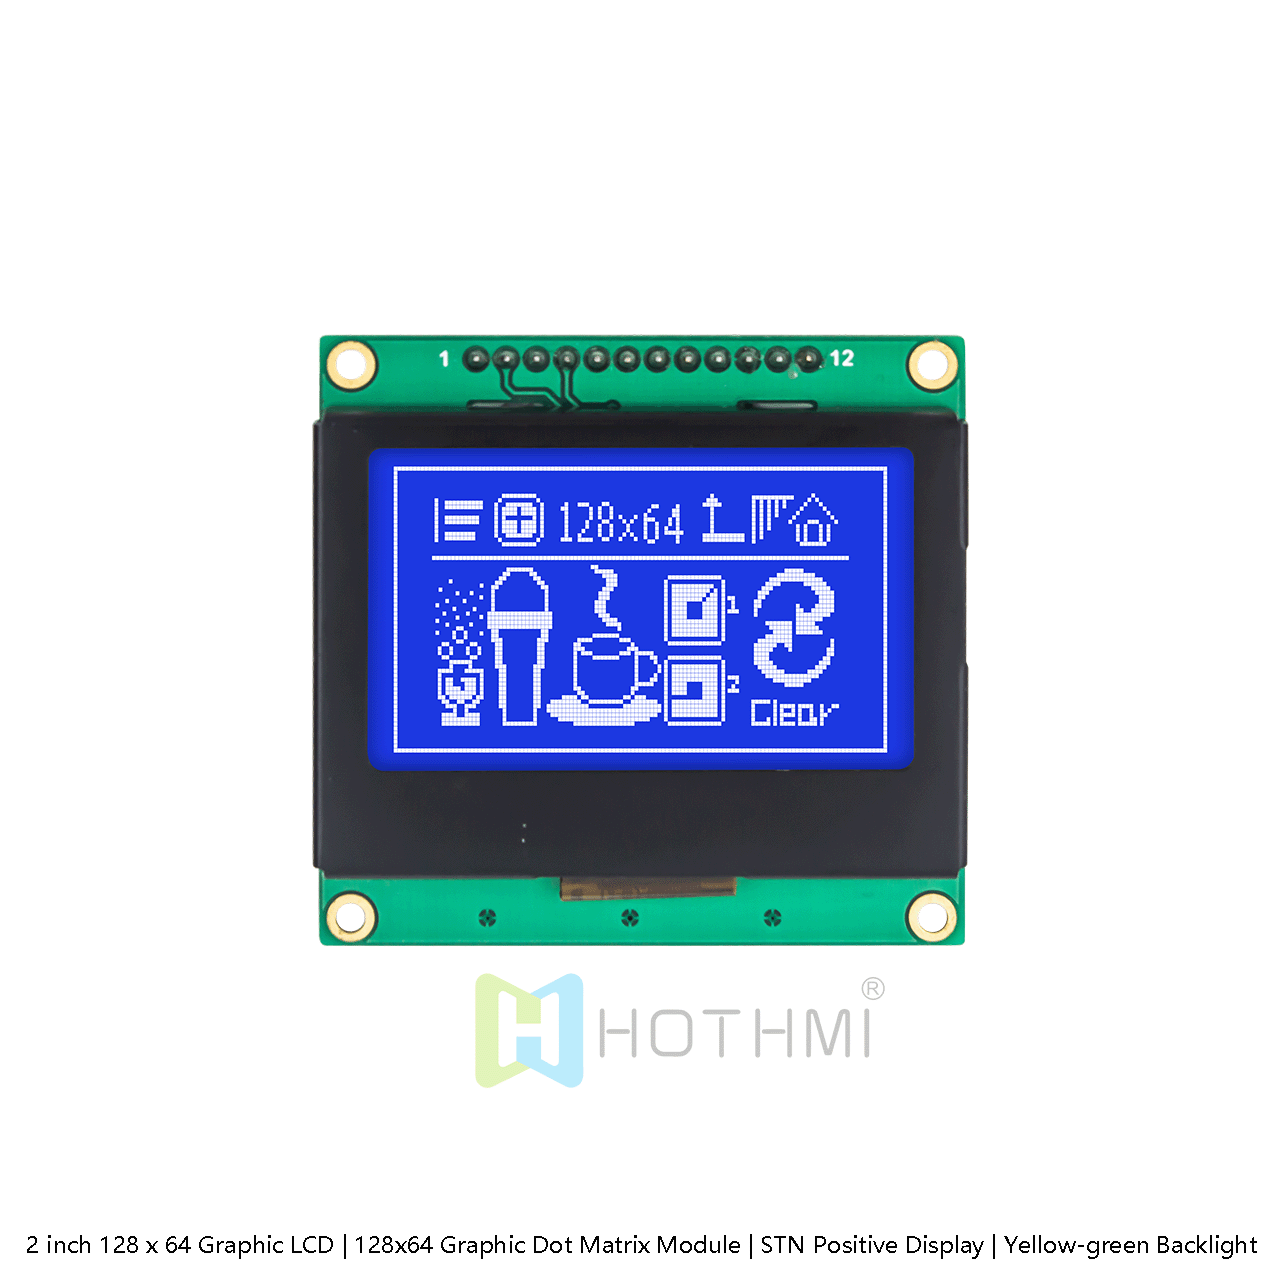 2英寸128 x 64 图形液晶显示屏 | 适用于 Arduino  | 白色背光 | 128x64 图形 LCD 模块 | ST7567 SPI | STN 负向显示 |蓝底白字